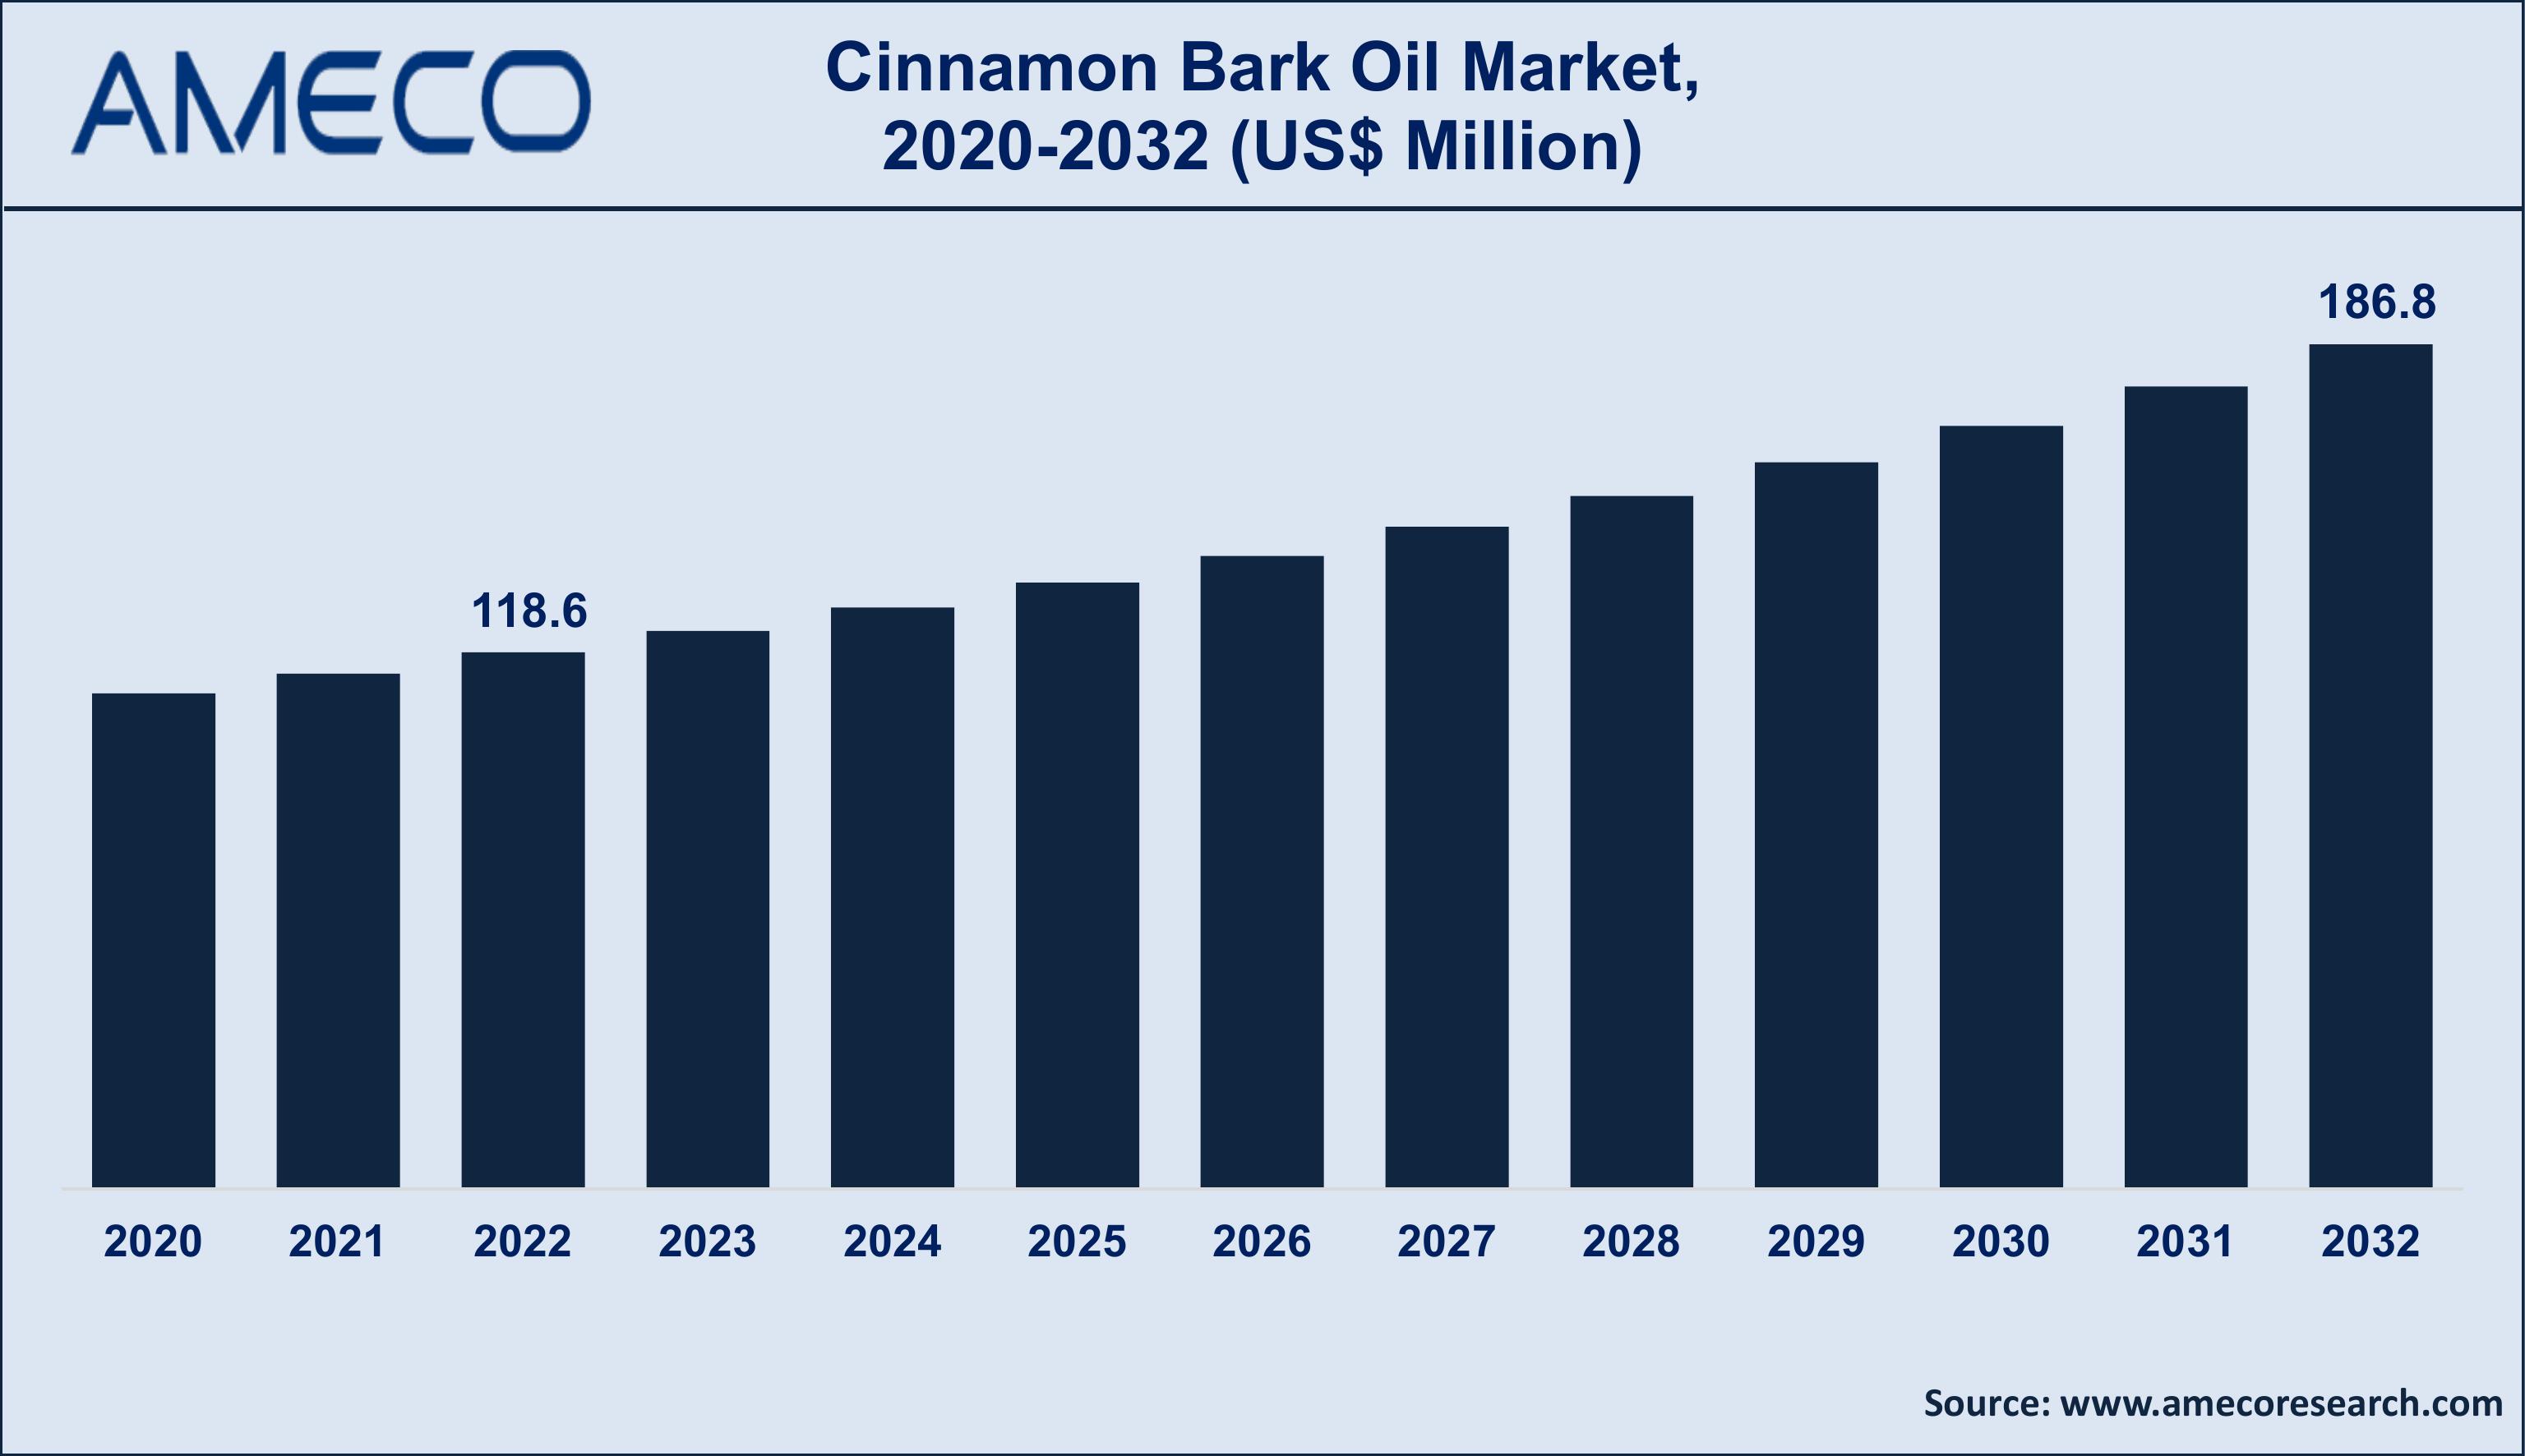 Cinnamon Bark Oil Market Trends